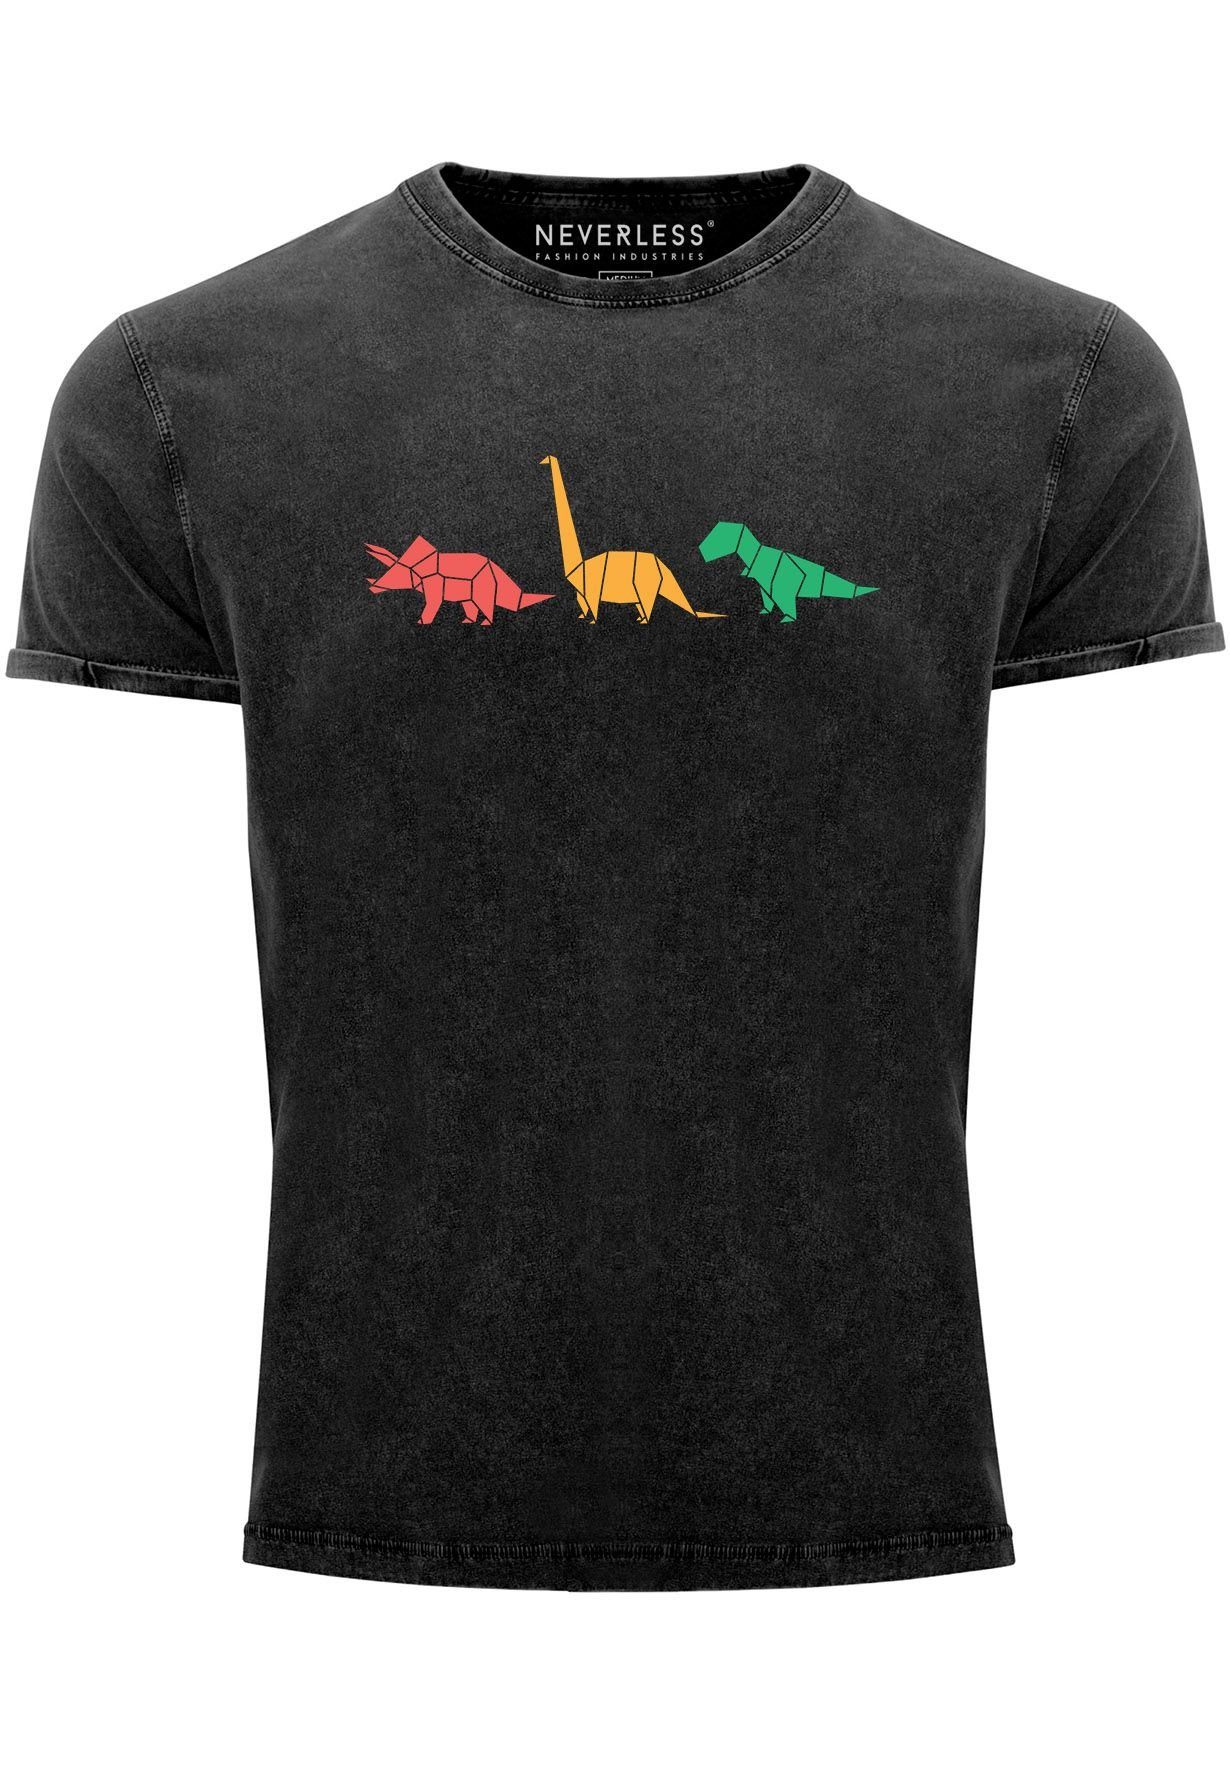 Vintage Neverless Aufdruck Tiere schwarz Polygon Geometric Dinosaurier mit Print Print-Shirt Herren Prin Shirt